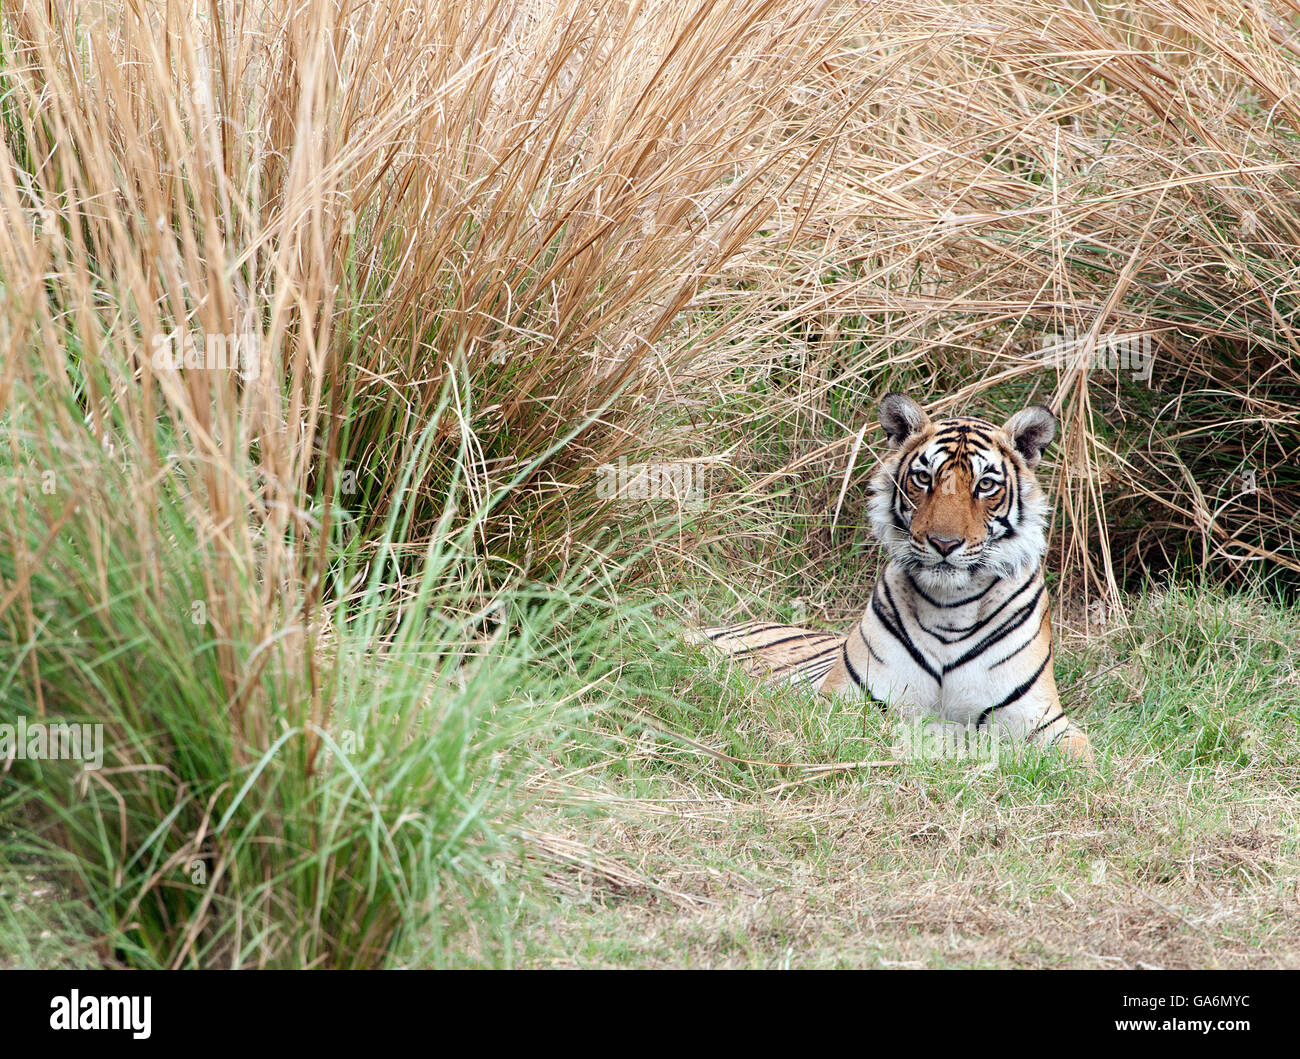 L'image de Tiger ( Panthera tigris ) T84, le sagittaire a été prise à Ranthambore, Inde Banque D'Images